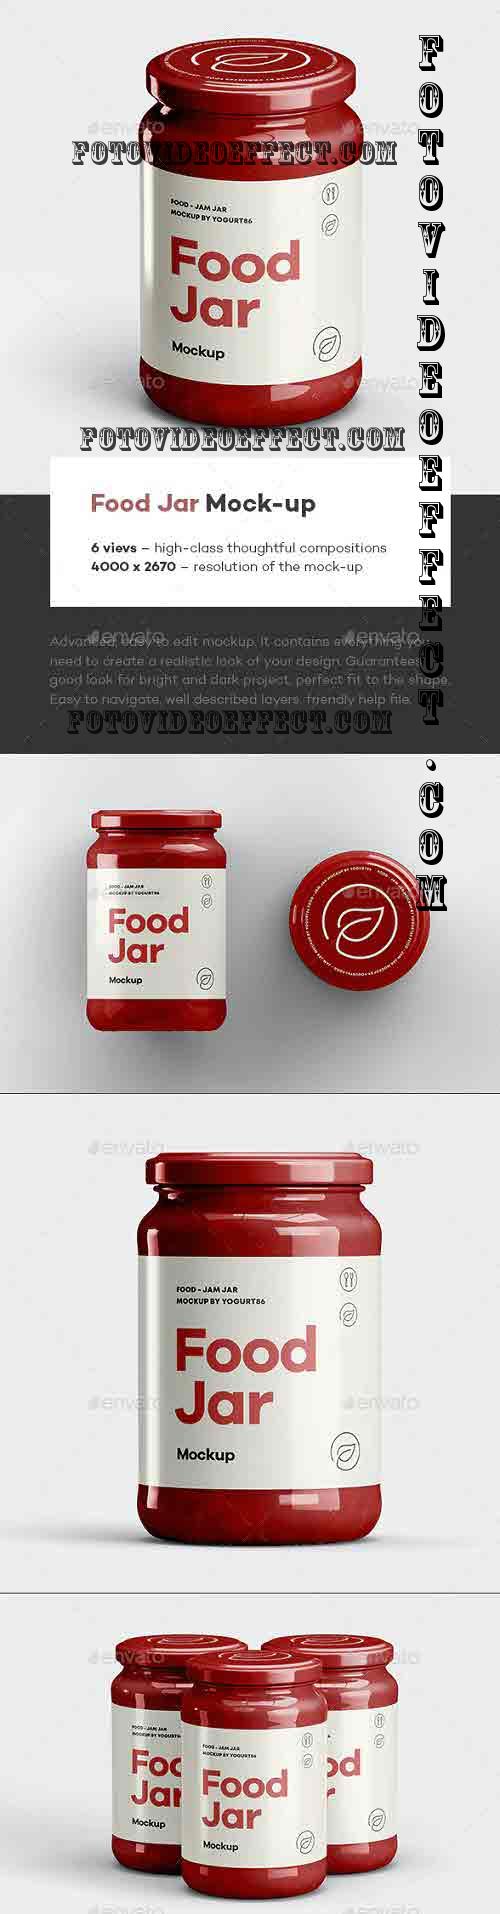 Food Jar Mock-up - 39636031